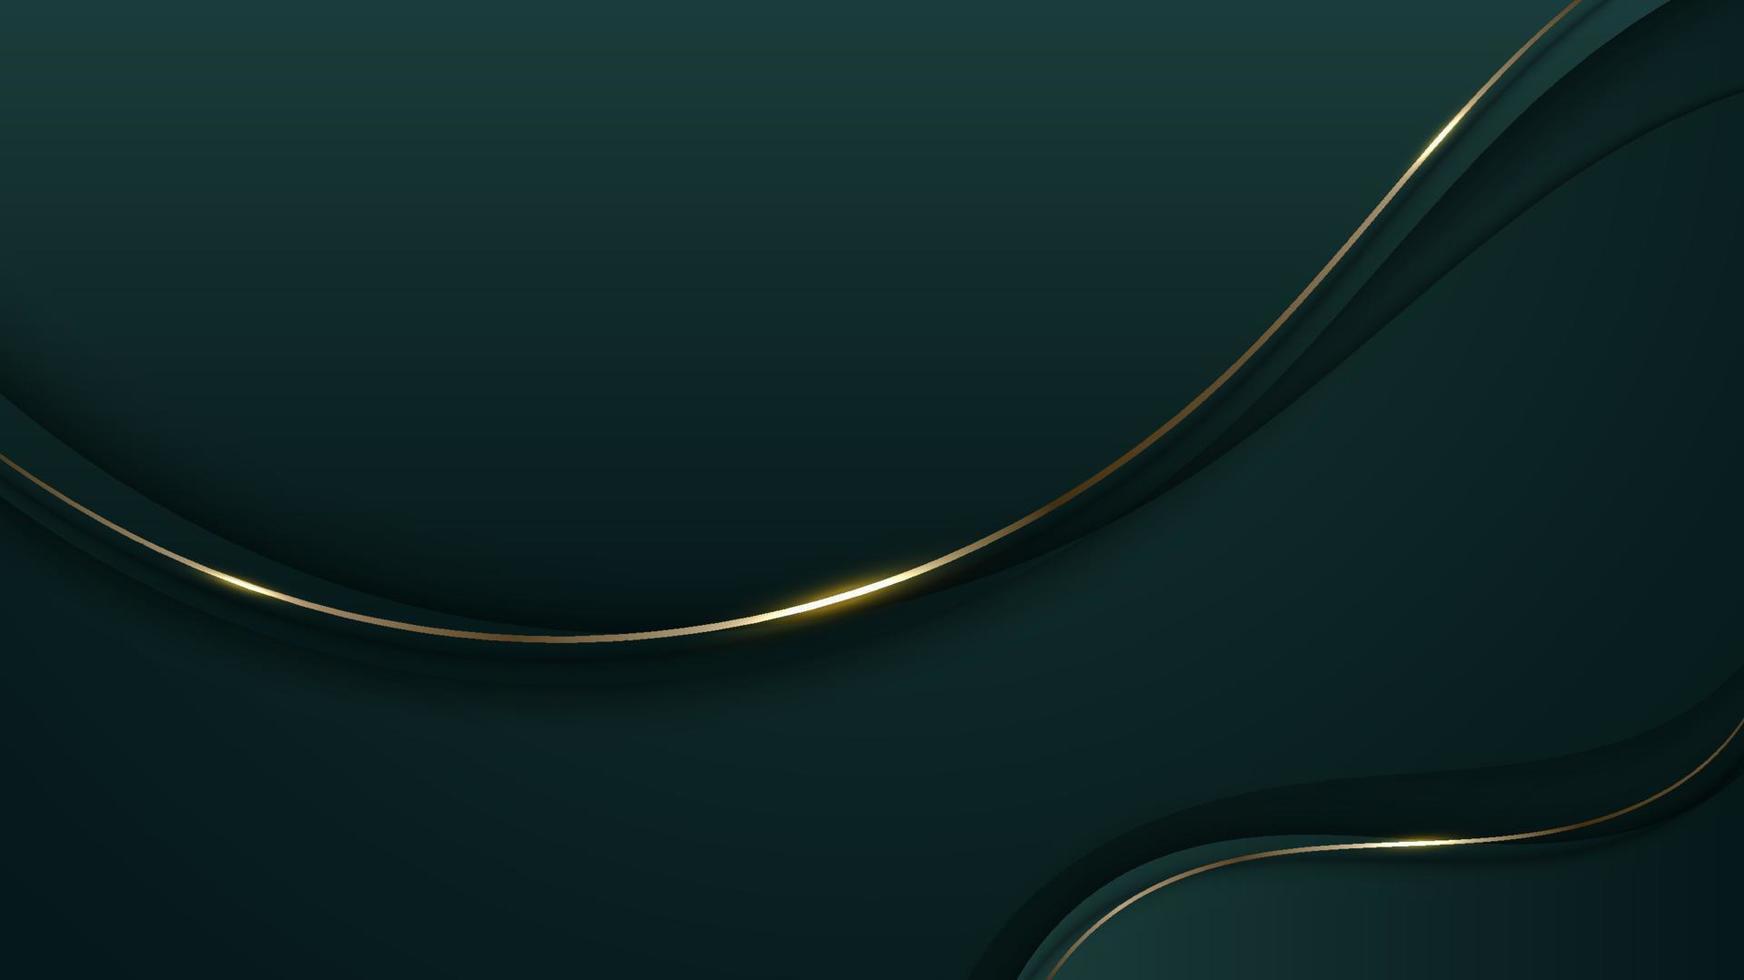 lignes de vague de couleur verte de luxe 3d abstraites avec décoration de ligne courbe dorée brillante et éclairage scintillant sur fond sombre dégradé vecteur